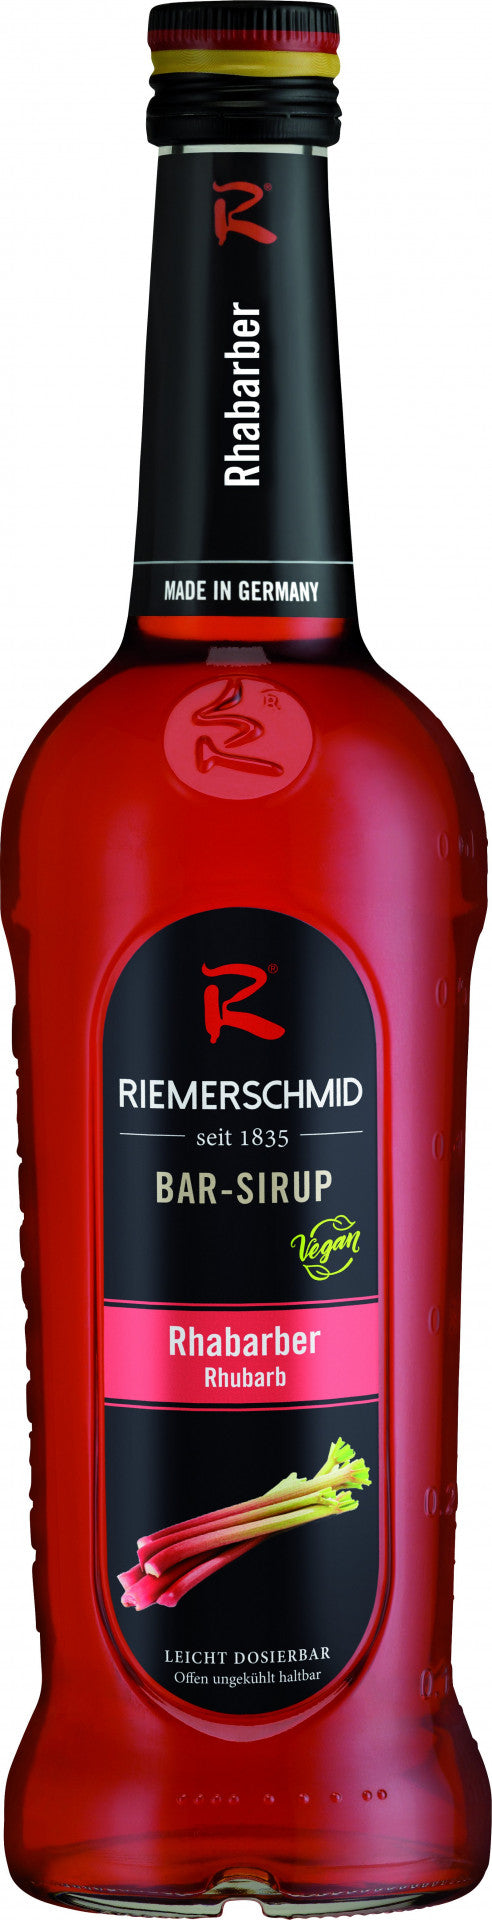 Riemerschmid Bar-Sirup Rhabarber Geschmack 0,7L